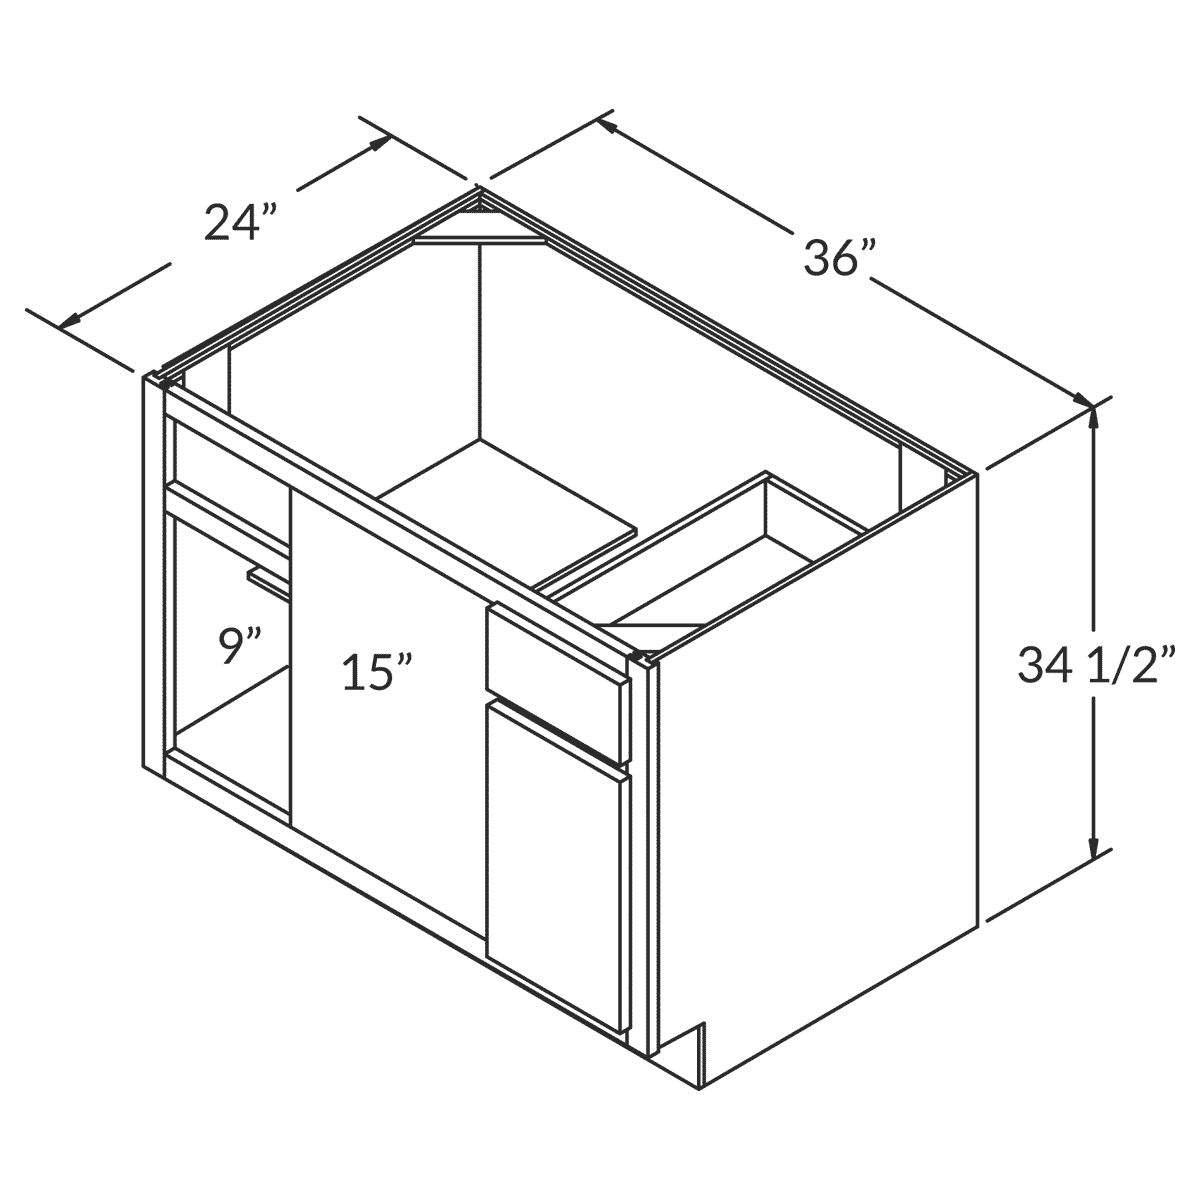 Cubitac Basic Oxford Latte Blind Corner Base 36"D Assembled Cabinet Wireframe